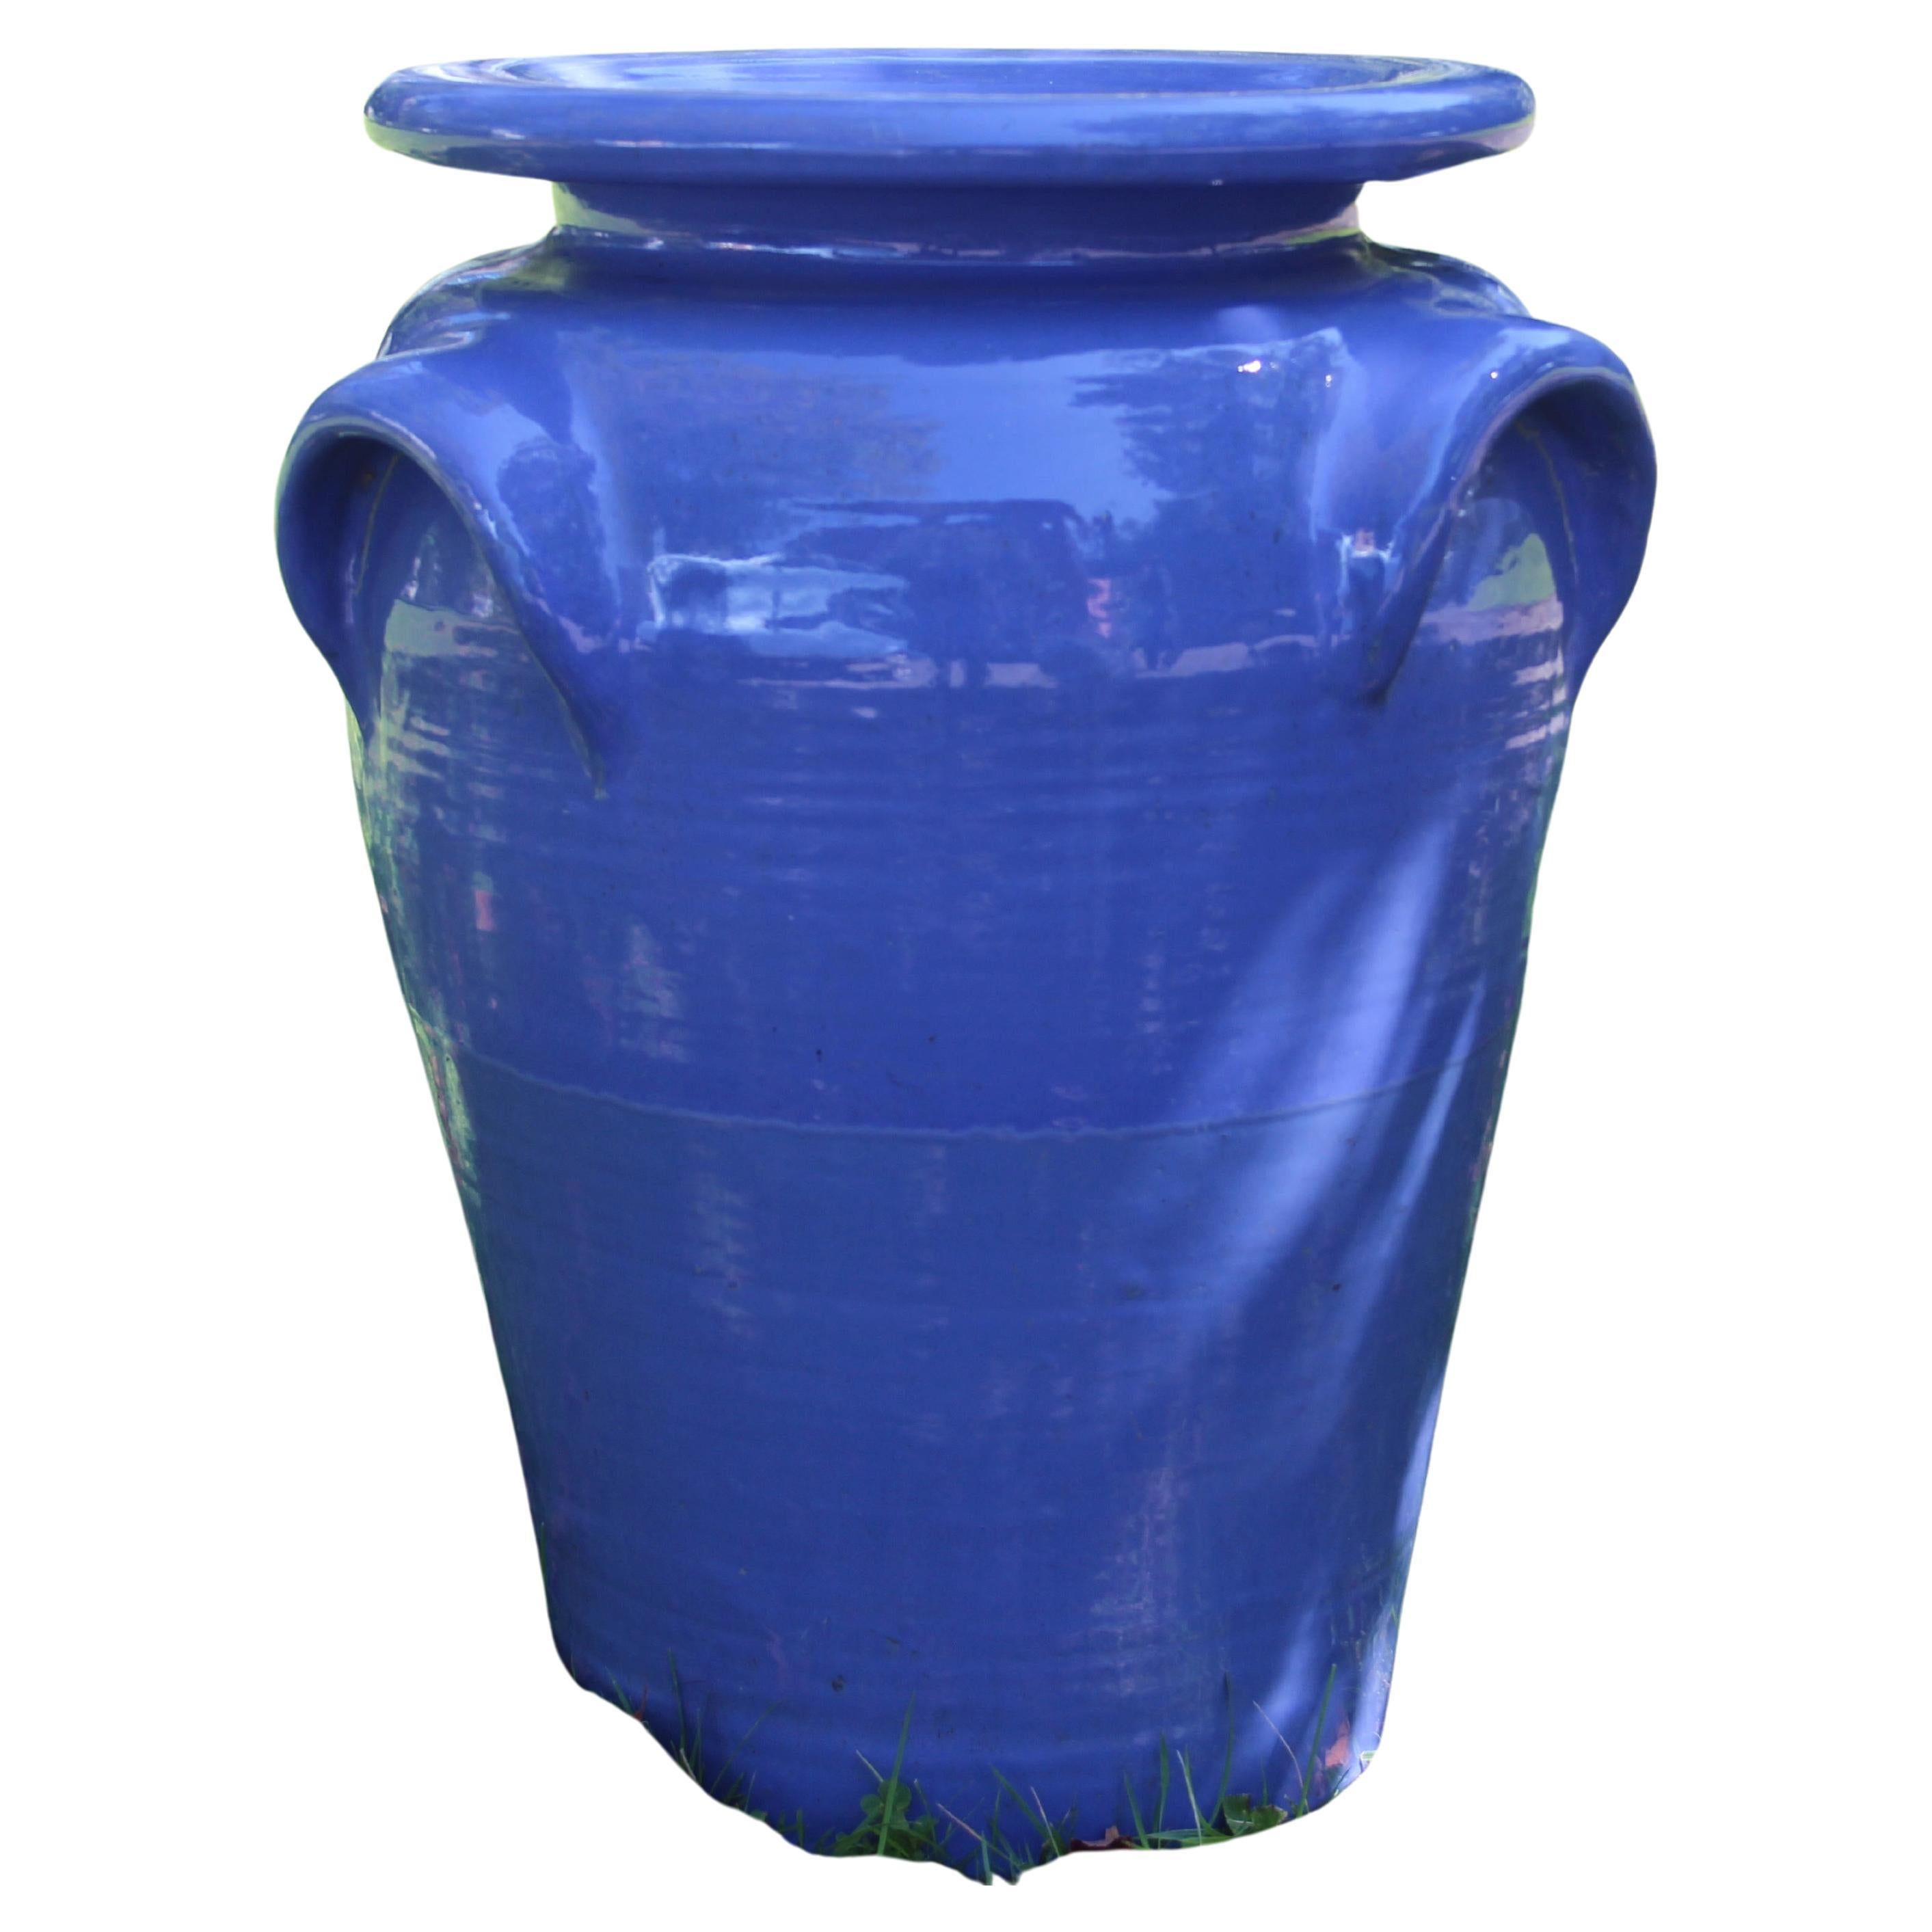 Huge Pickrull Zanesville Stoneware Jar Urn Pottery Blue Arts & Crafts Floor Vase For Sale